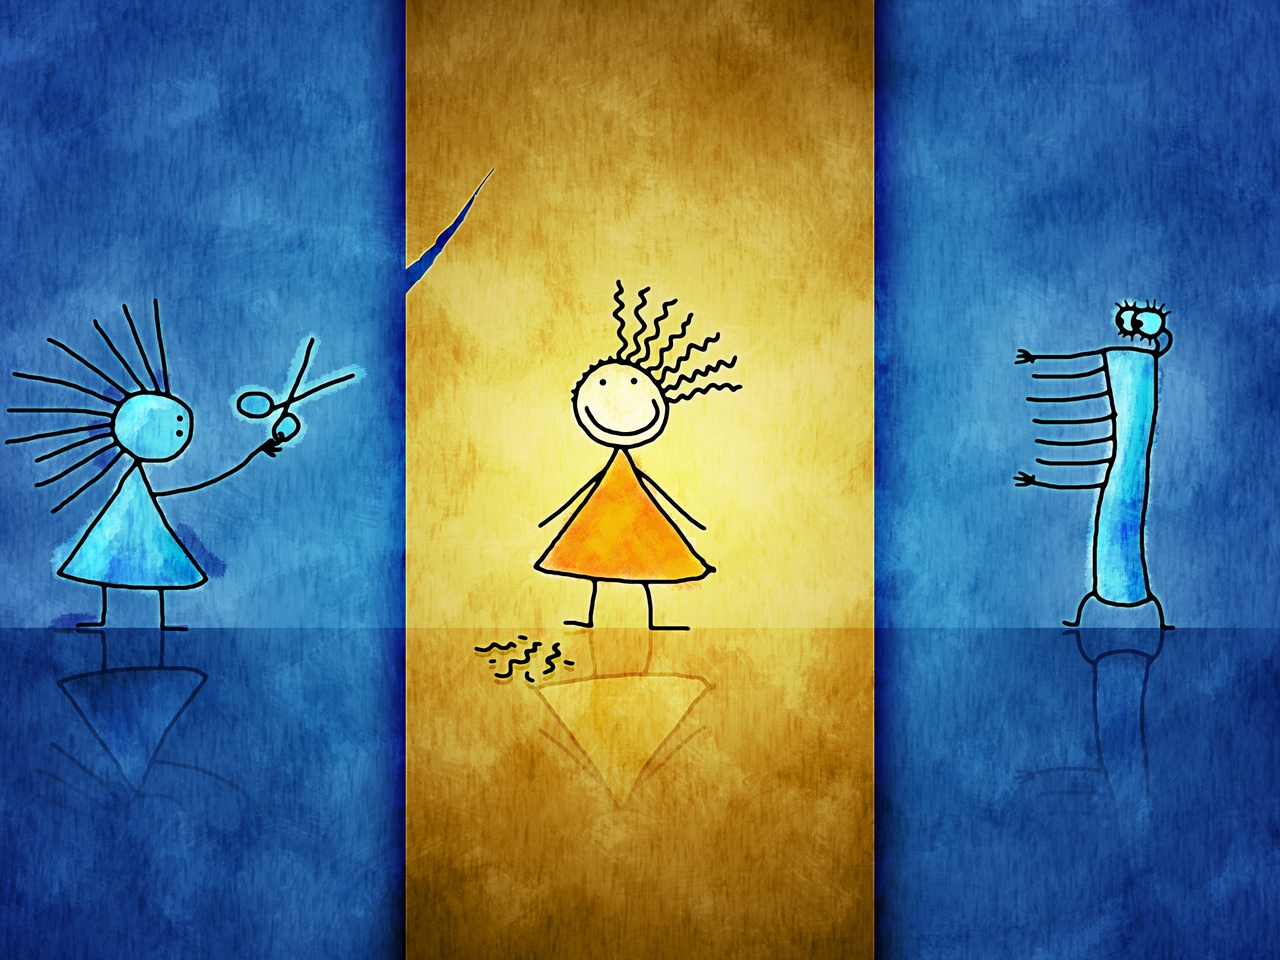 Картинка: Девочки, стрижка, ножницы, юбка, синий, жёлтый, лента, большеглазый